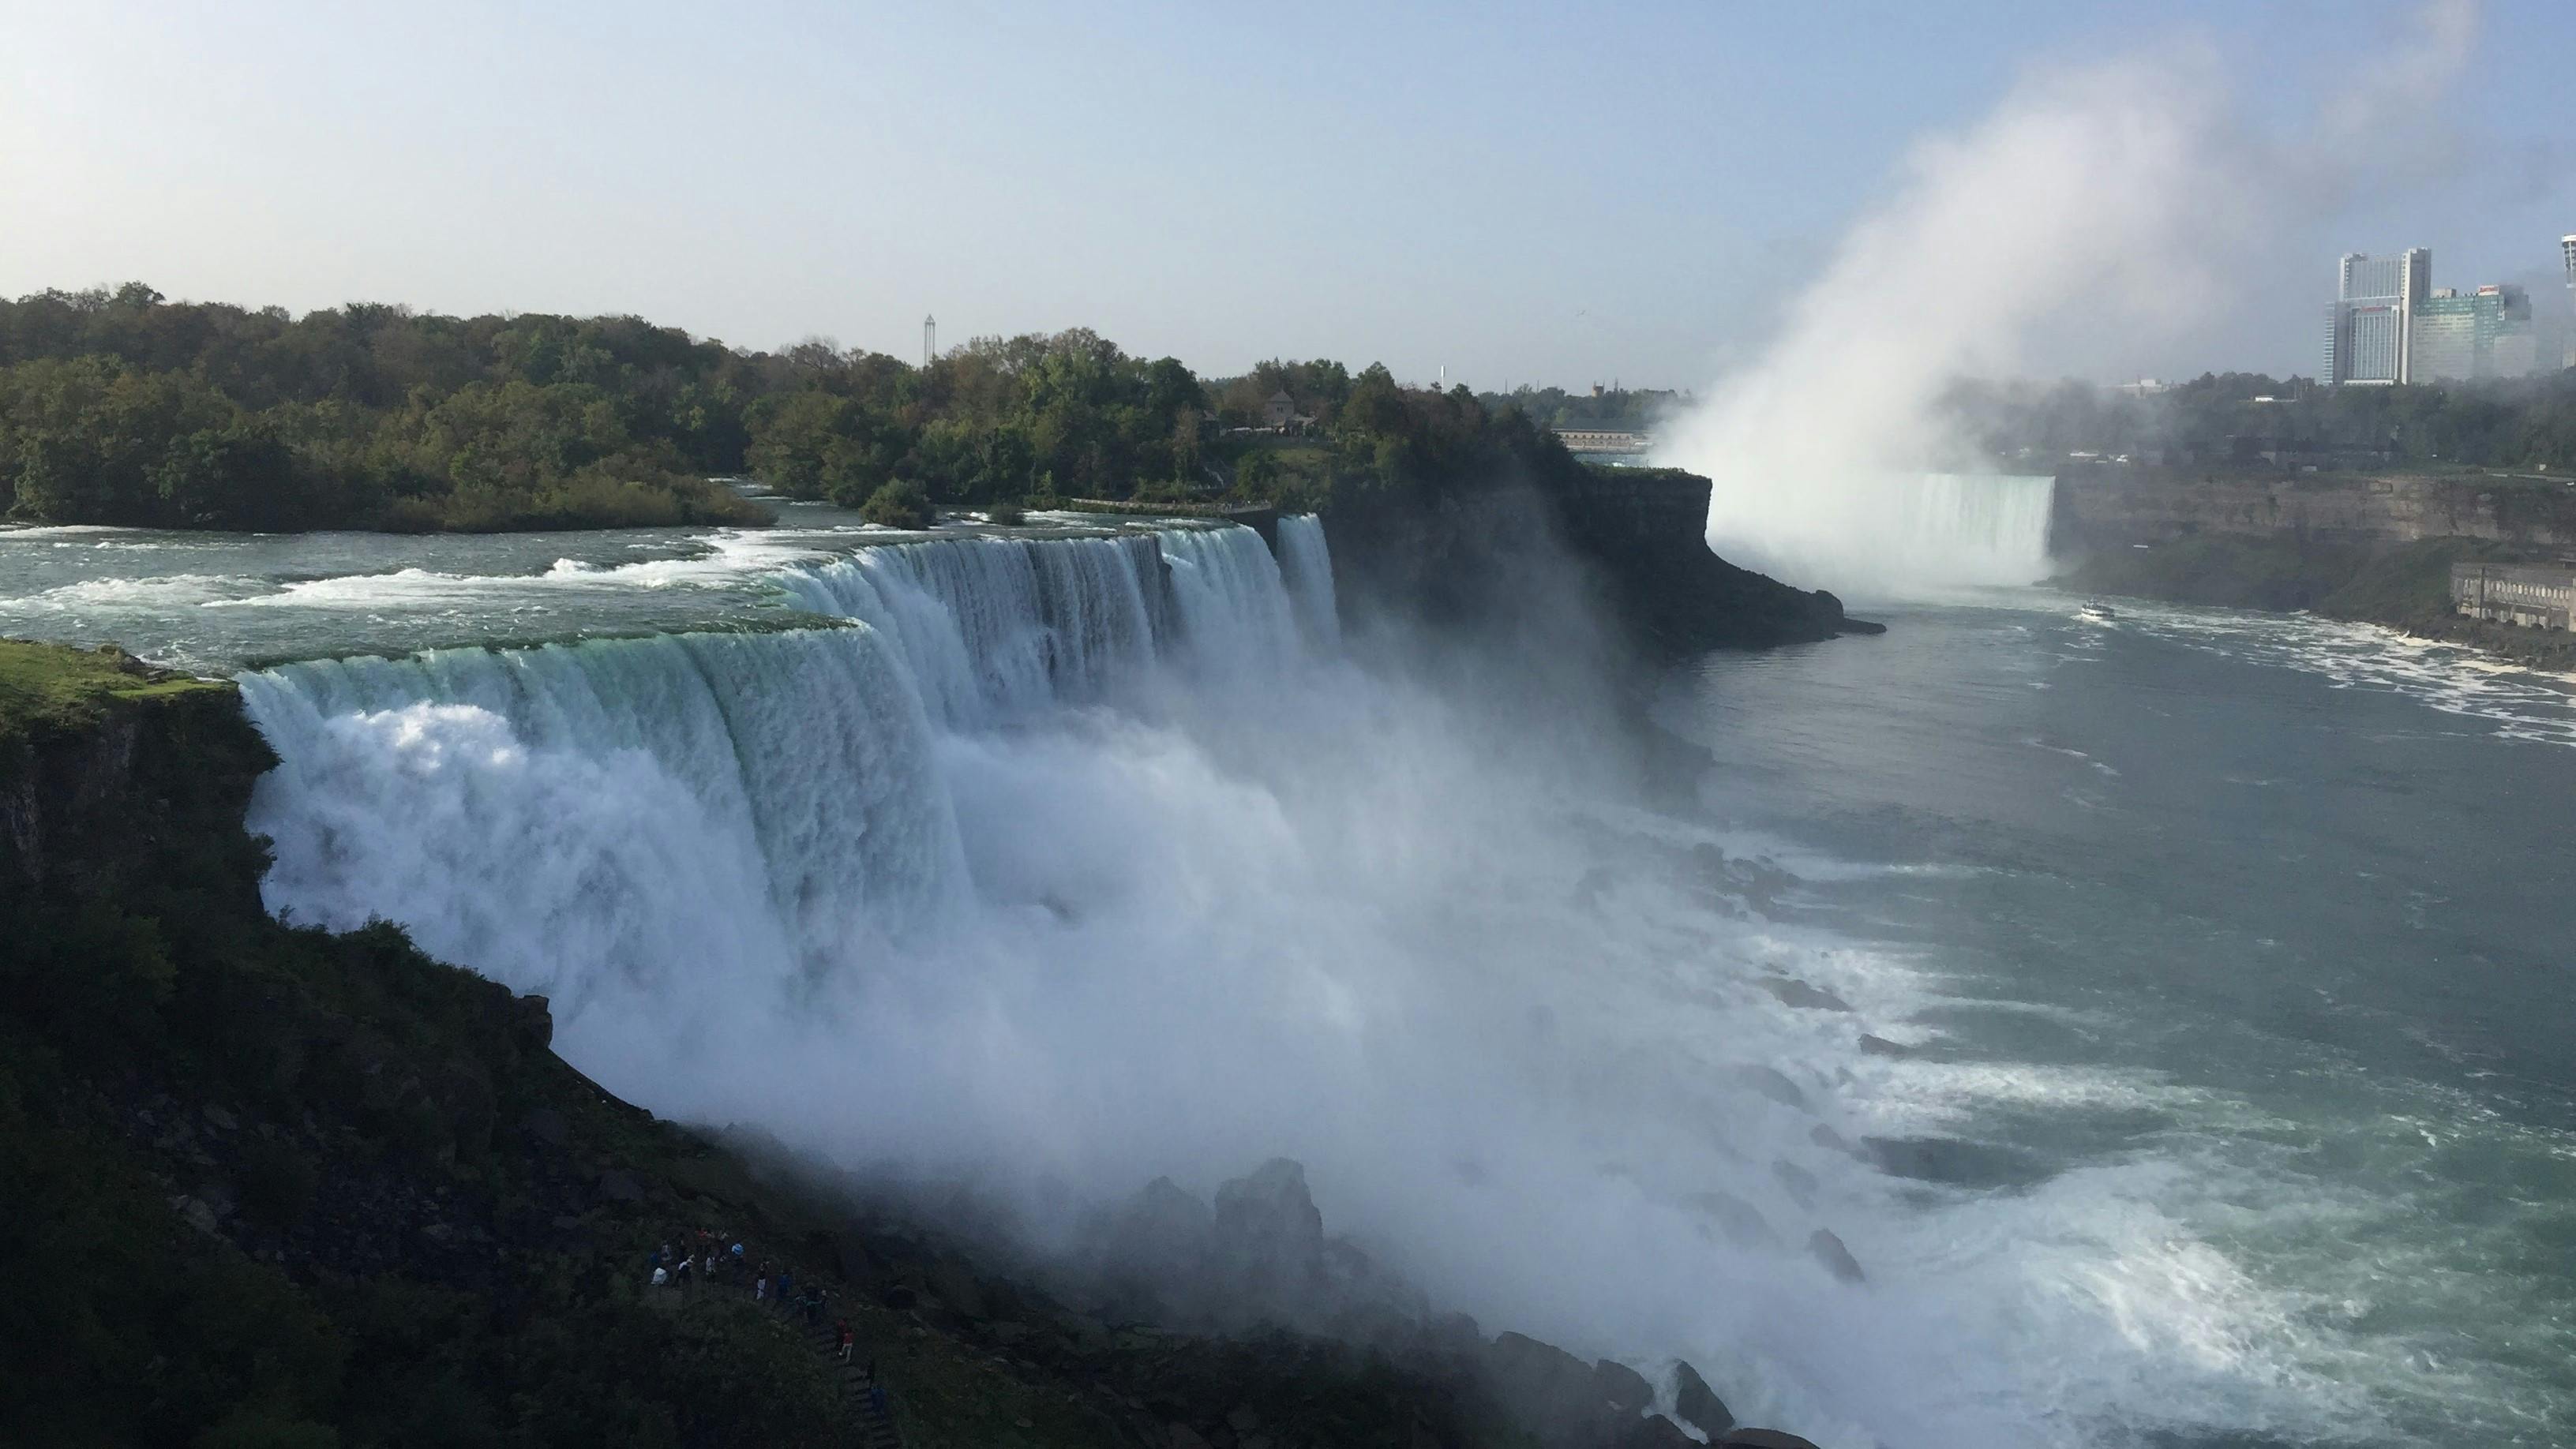 Tagestour zu den Niagarafällen ab New York City